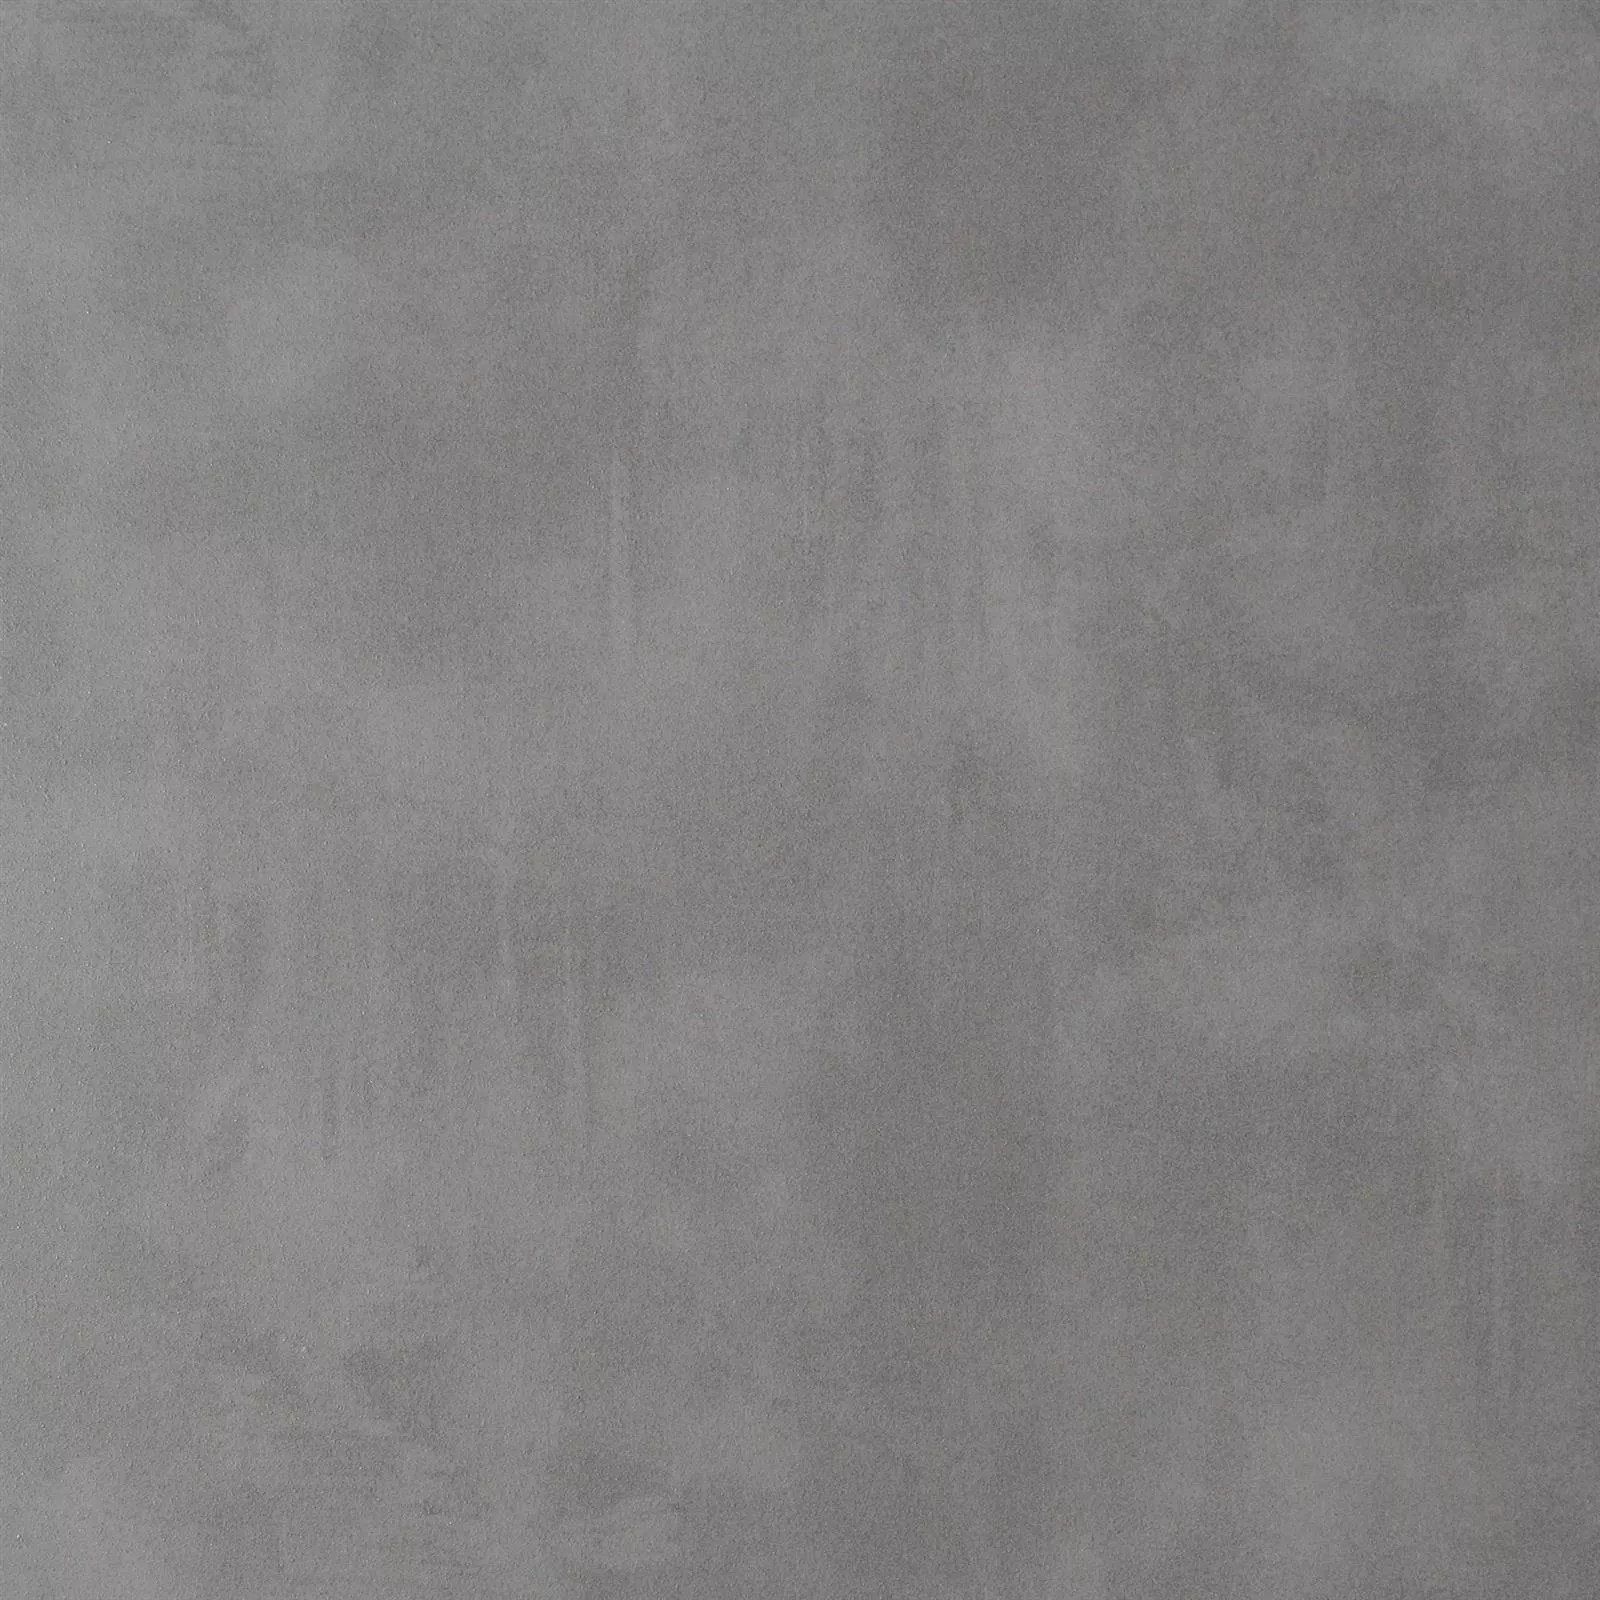 Campione Piastrella Esterni Zeus Cemento Ottica Grey 60x60cm